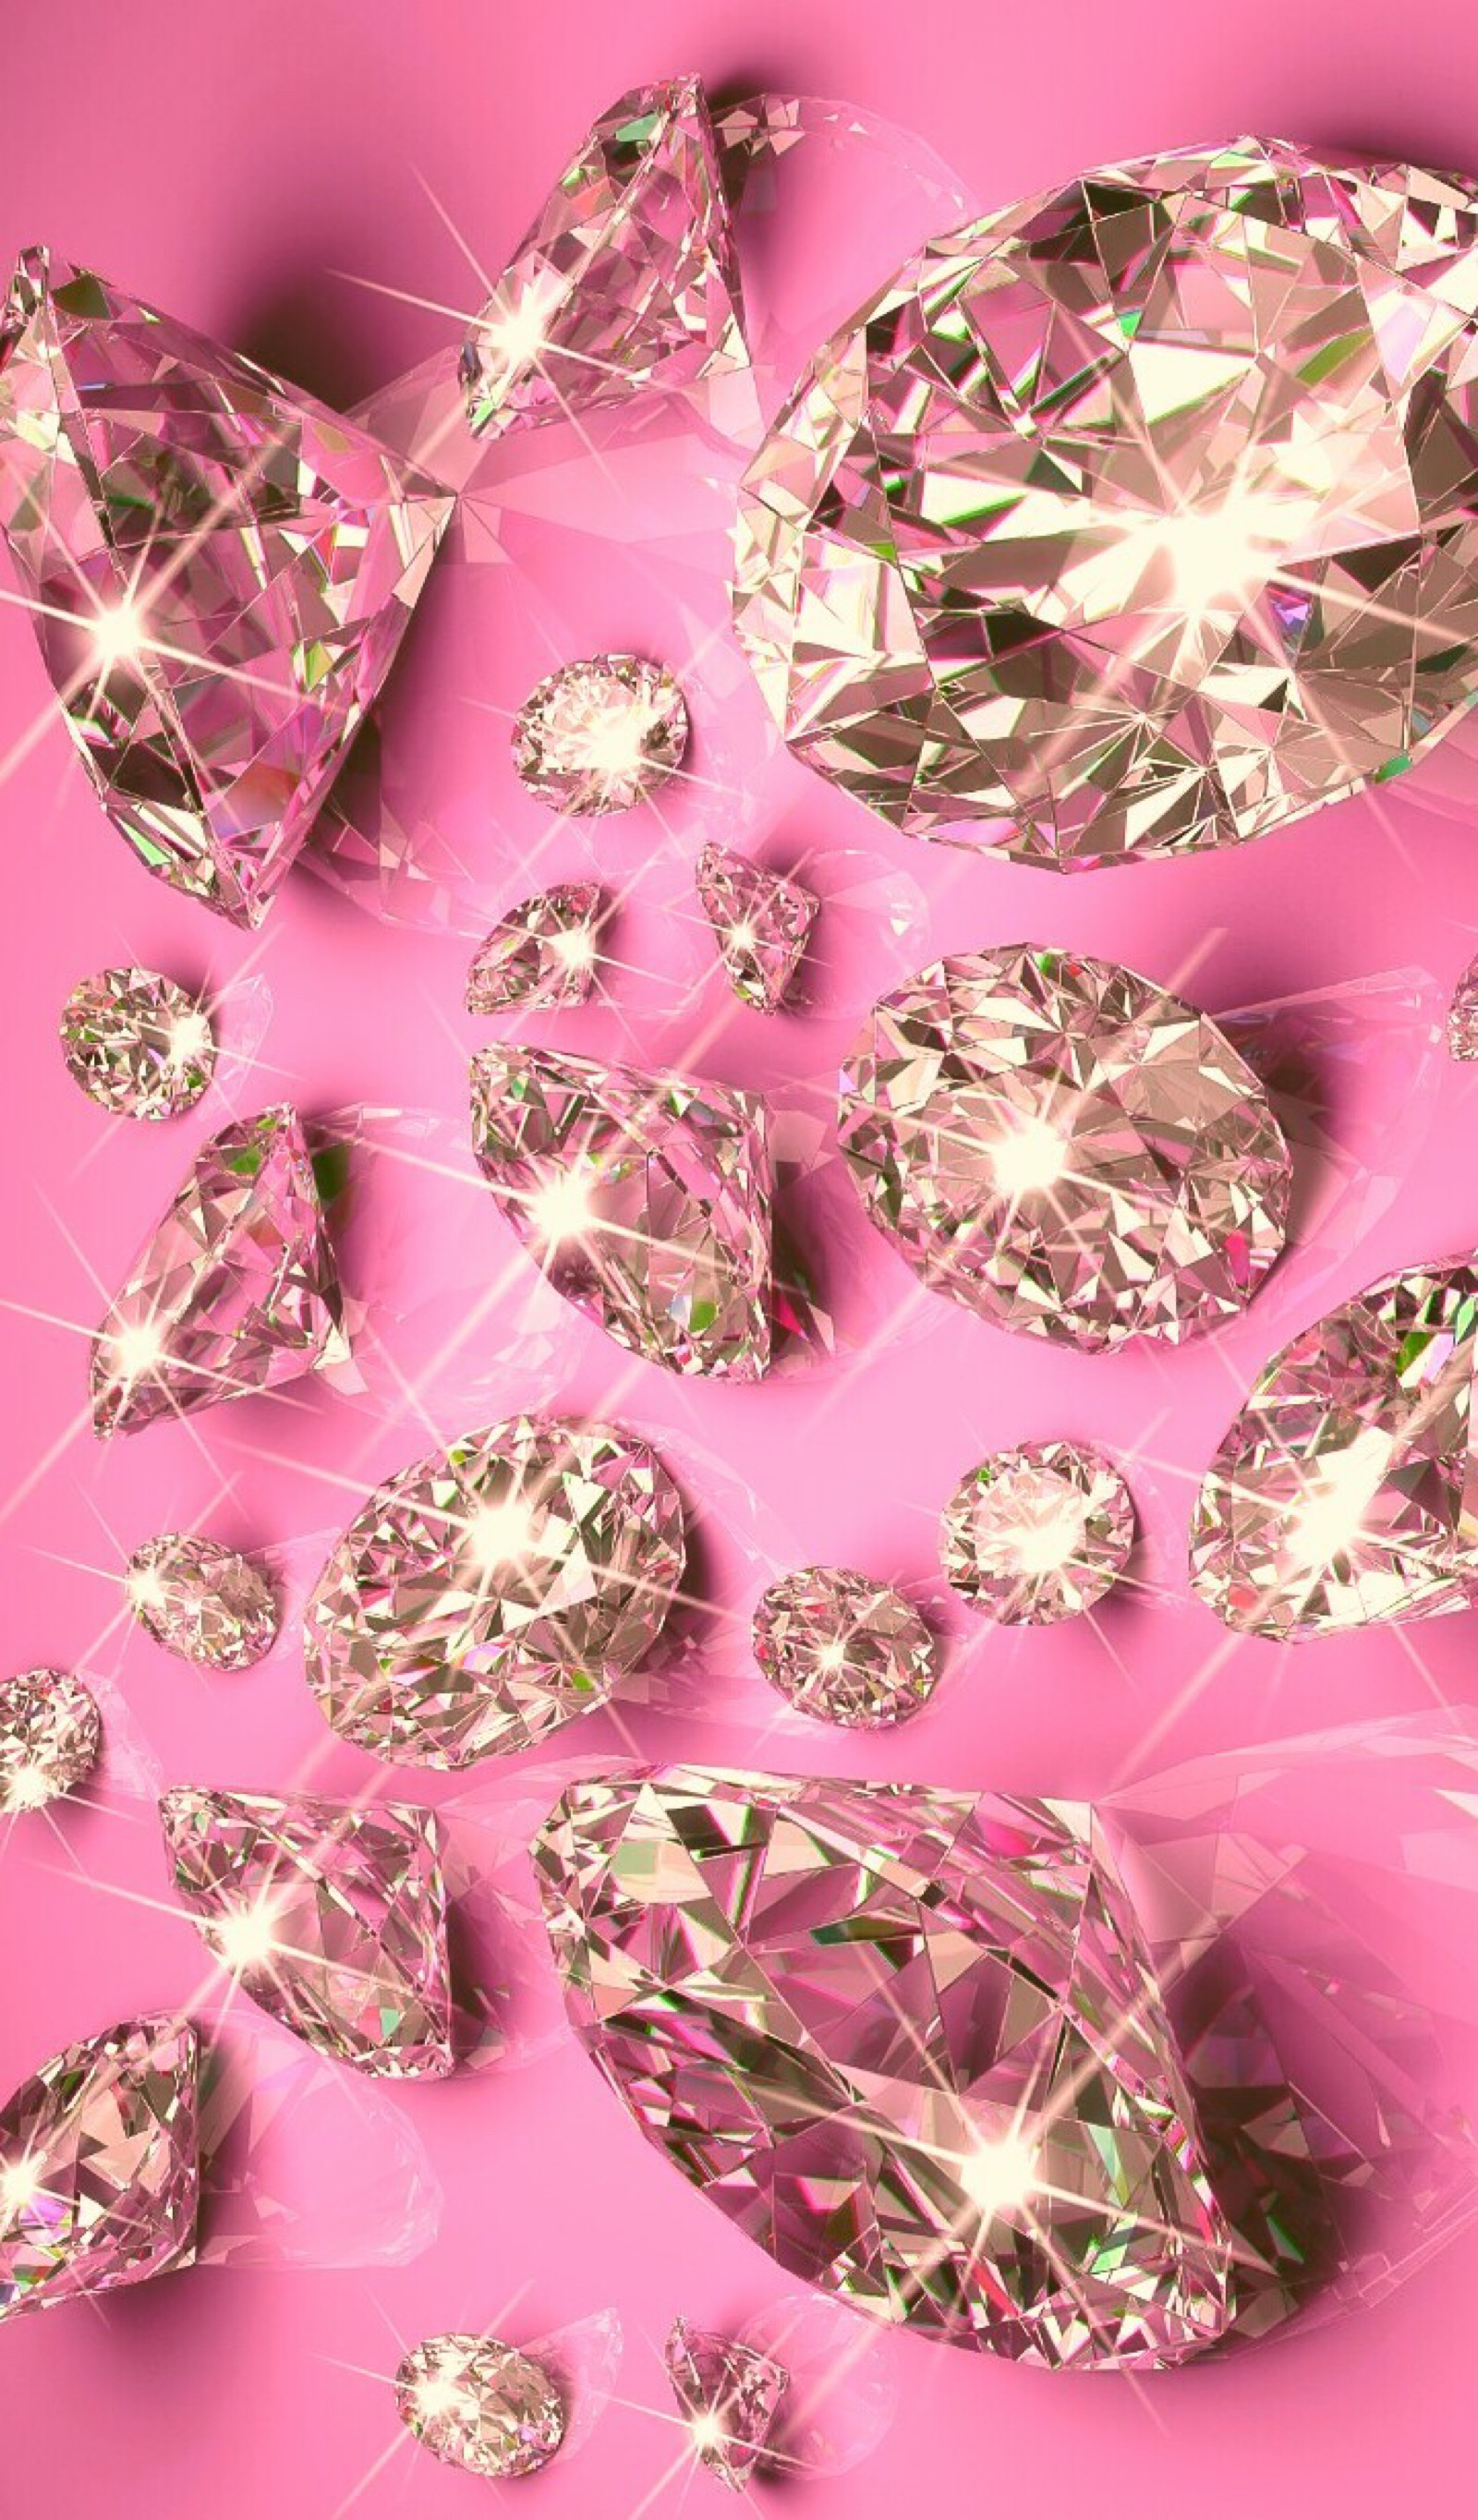 bling bling 钻石宝石背景素材 - 堆糖,美图壁纸兴趣